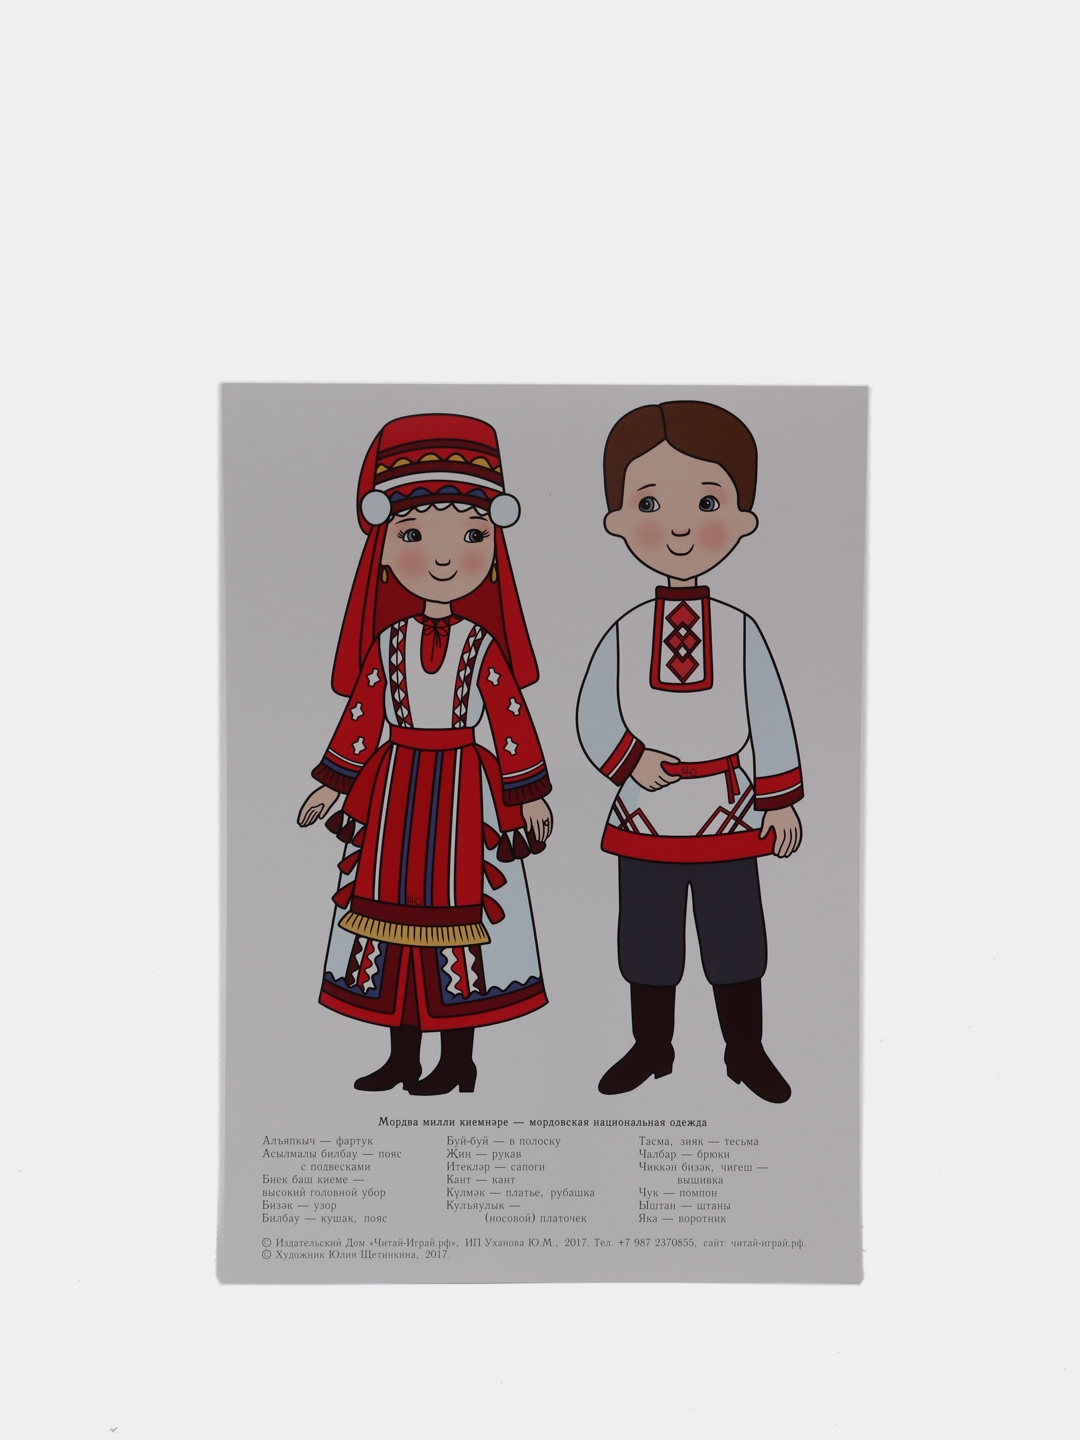 удмуртский национальный костюм картинки для детей